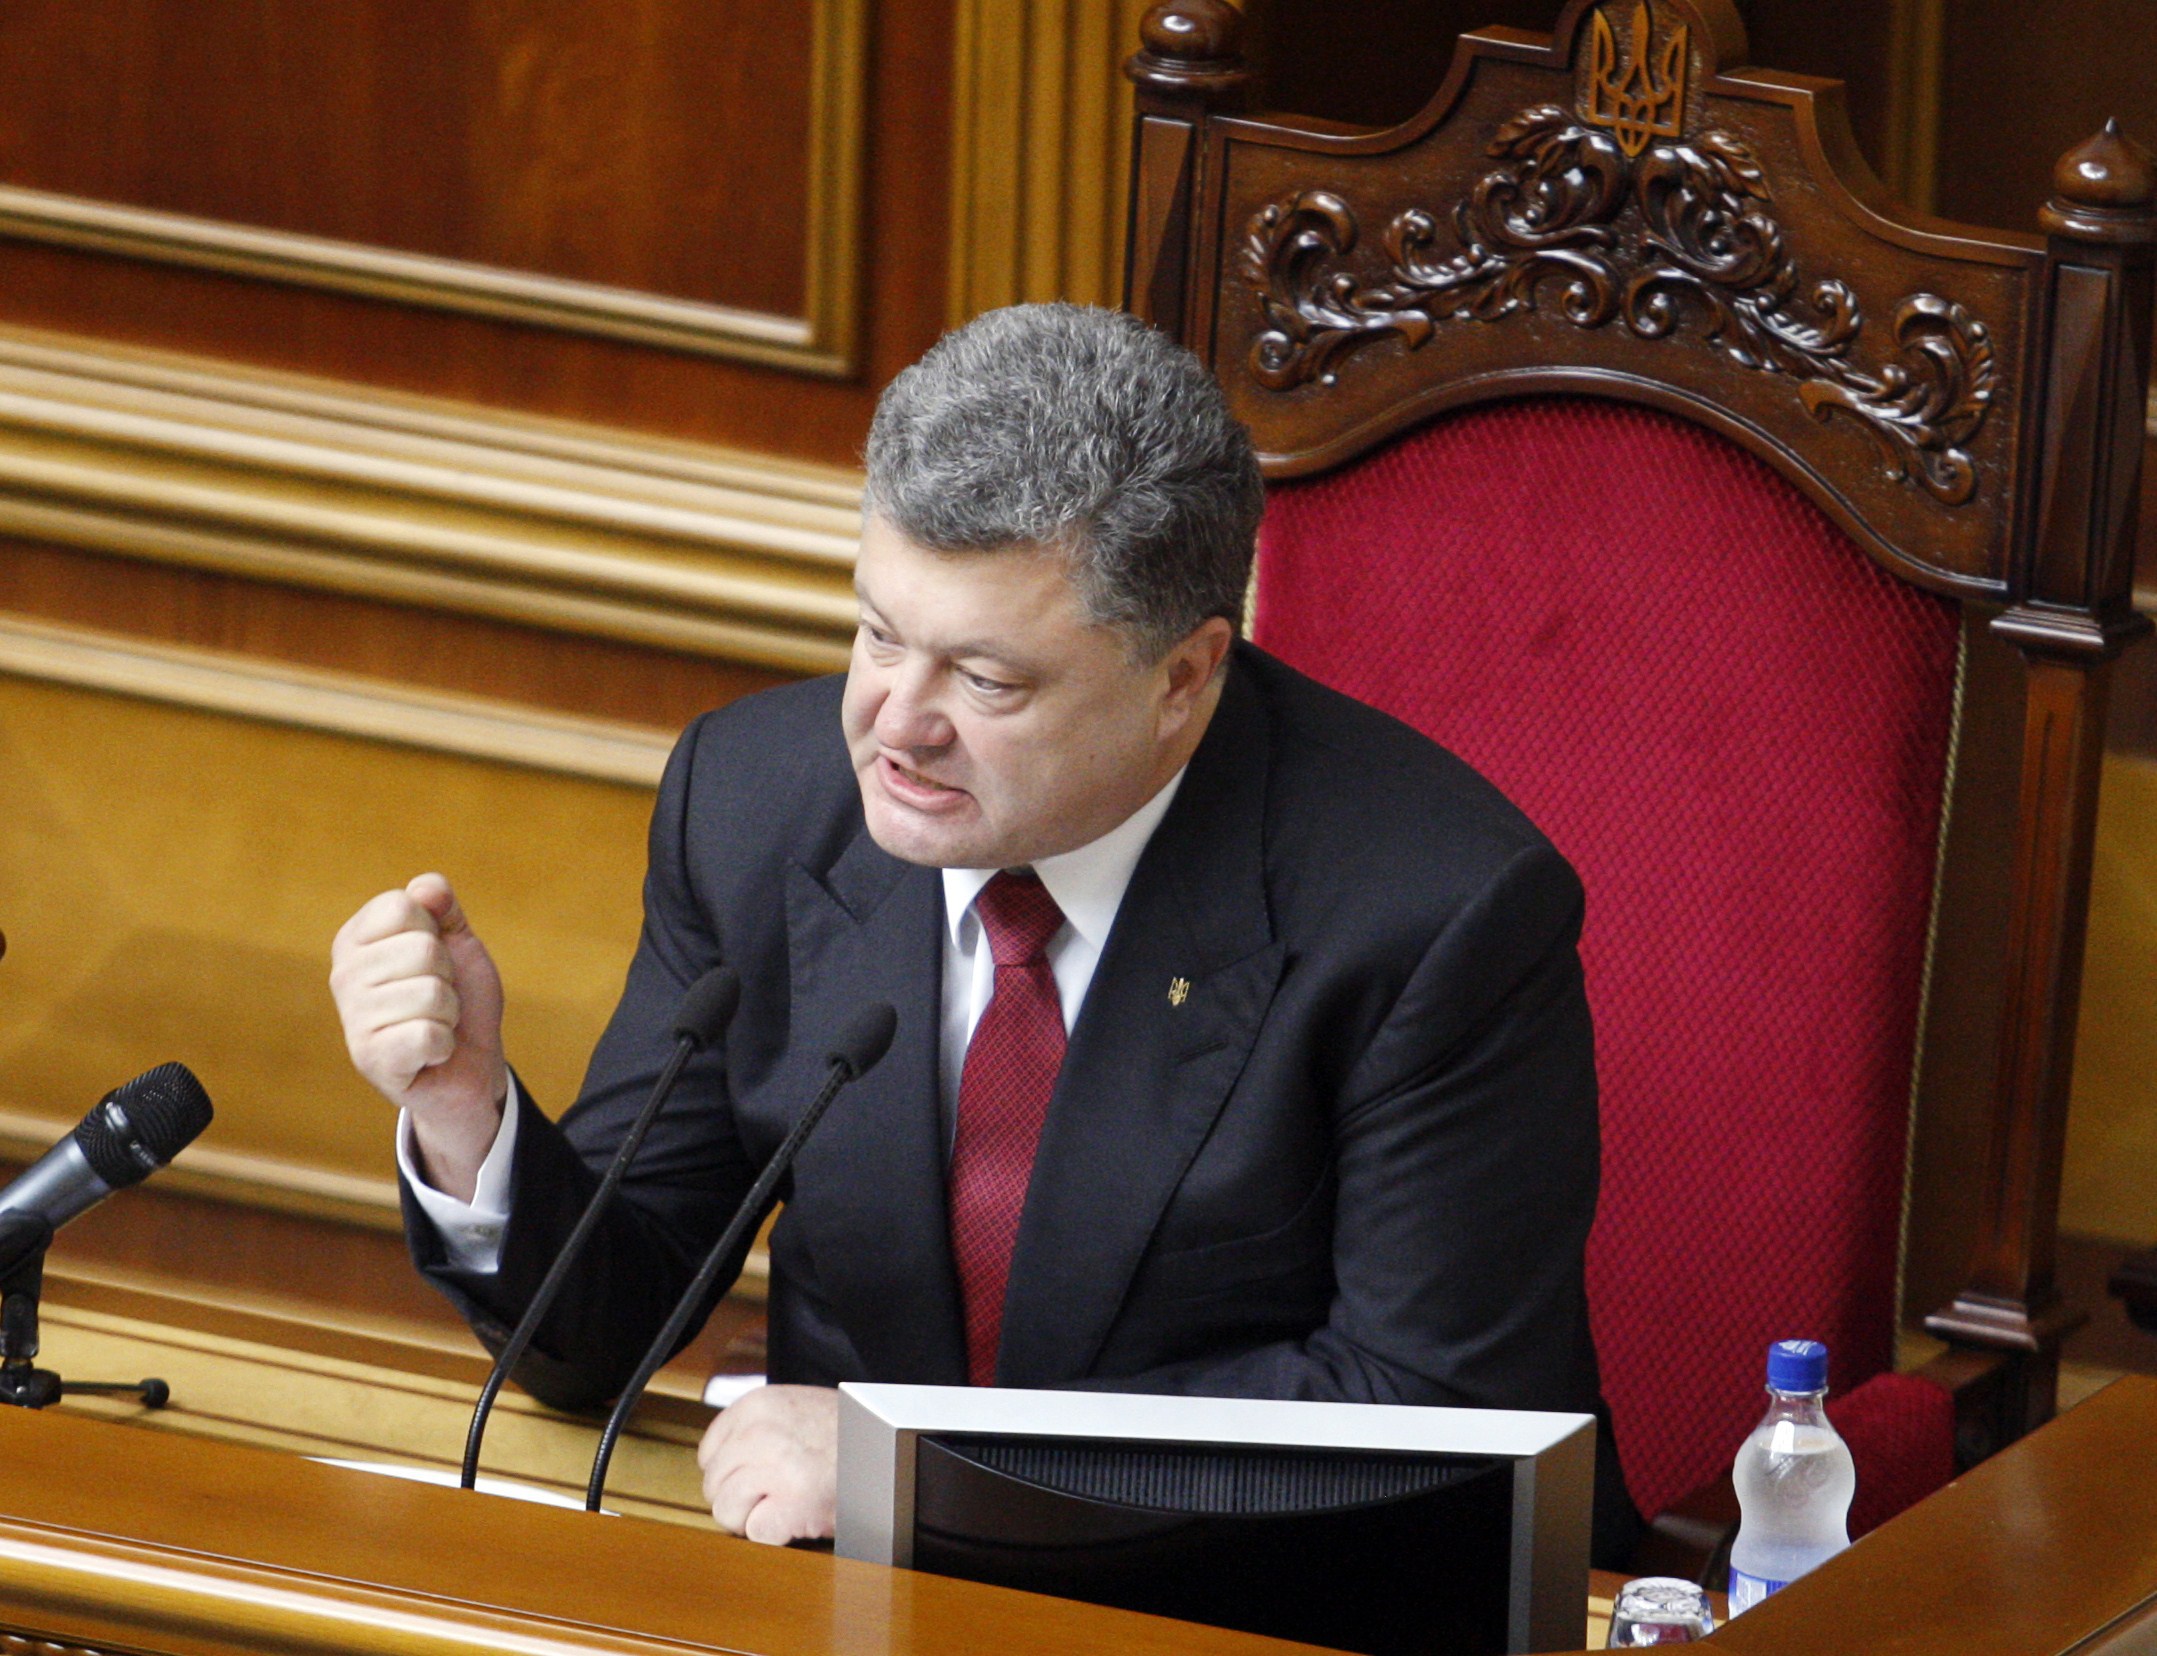 Ucraina ia atitudine. Preşedintele ucrainean Petro Poroşenko vrea restricţii pentru cetăţenii ruşi: "Putin îşi doreşte vechiul imperiu rus”